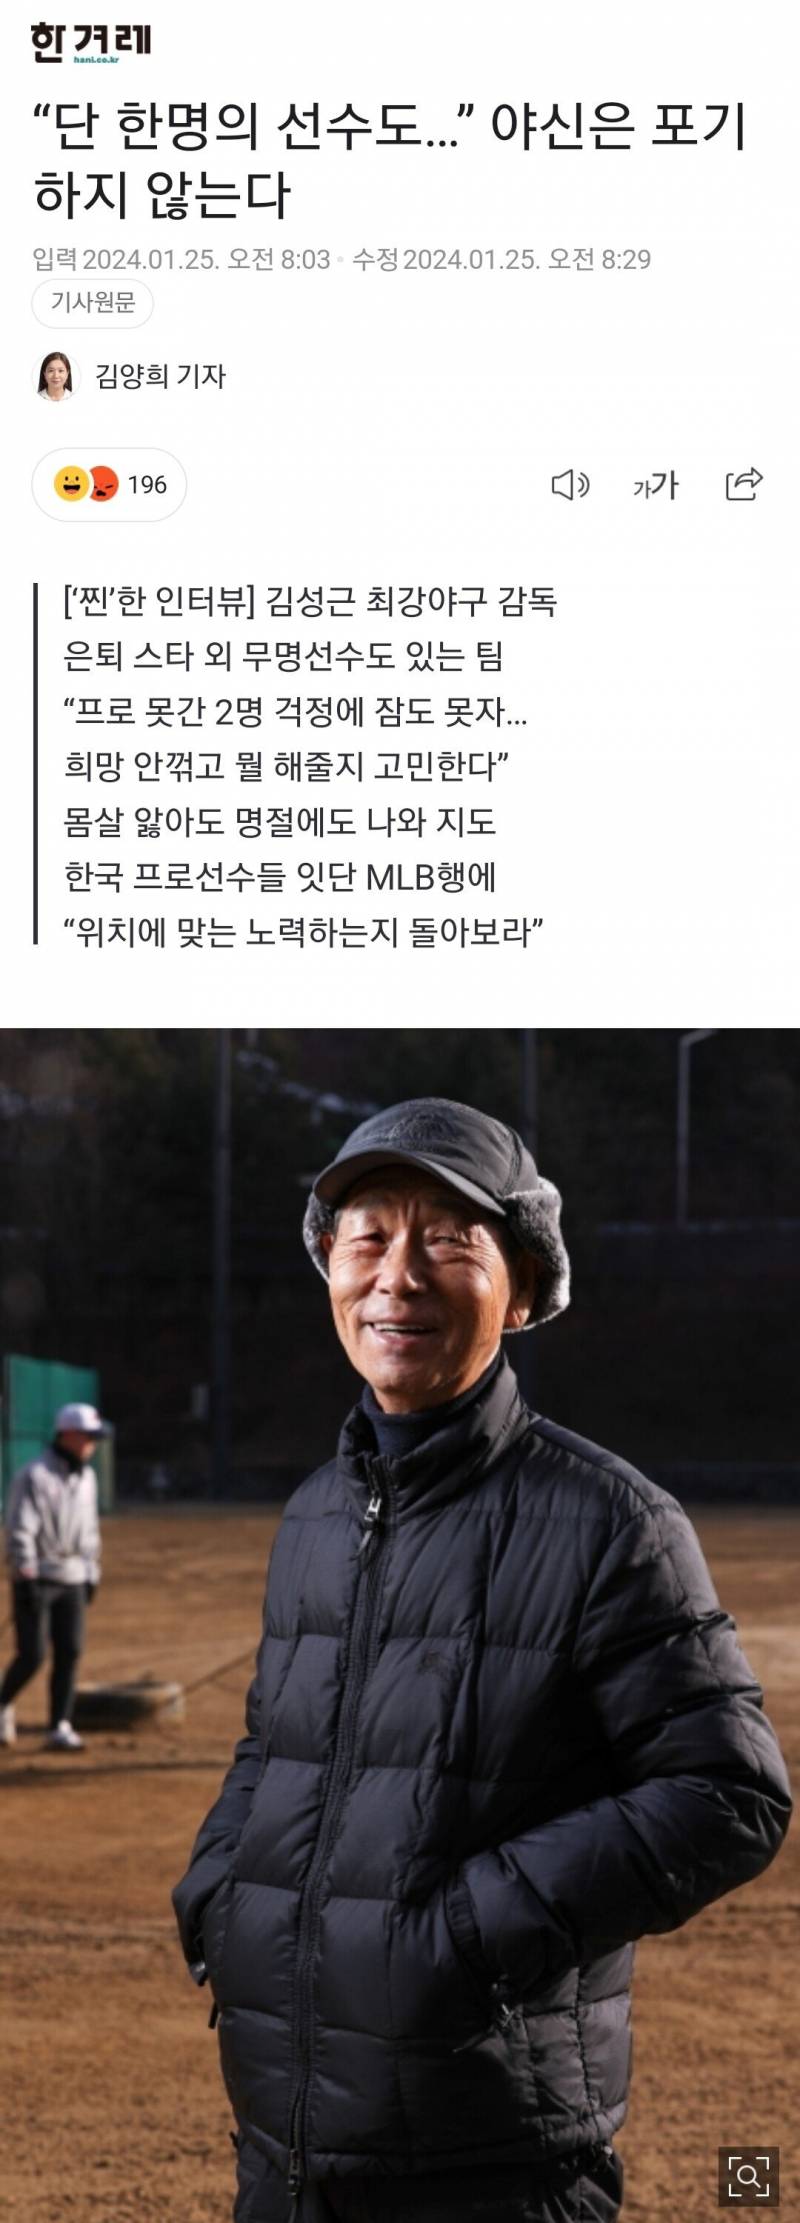 [정보/소식] 김성근 : 한국 프로선수들 잇단 MLB행에 "위치에 맞는 노력하는지 돌아보라” | 인스티즈